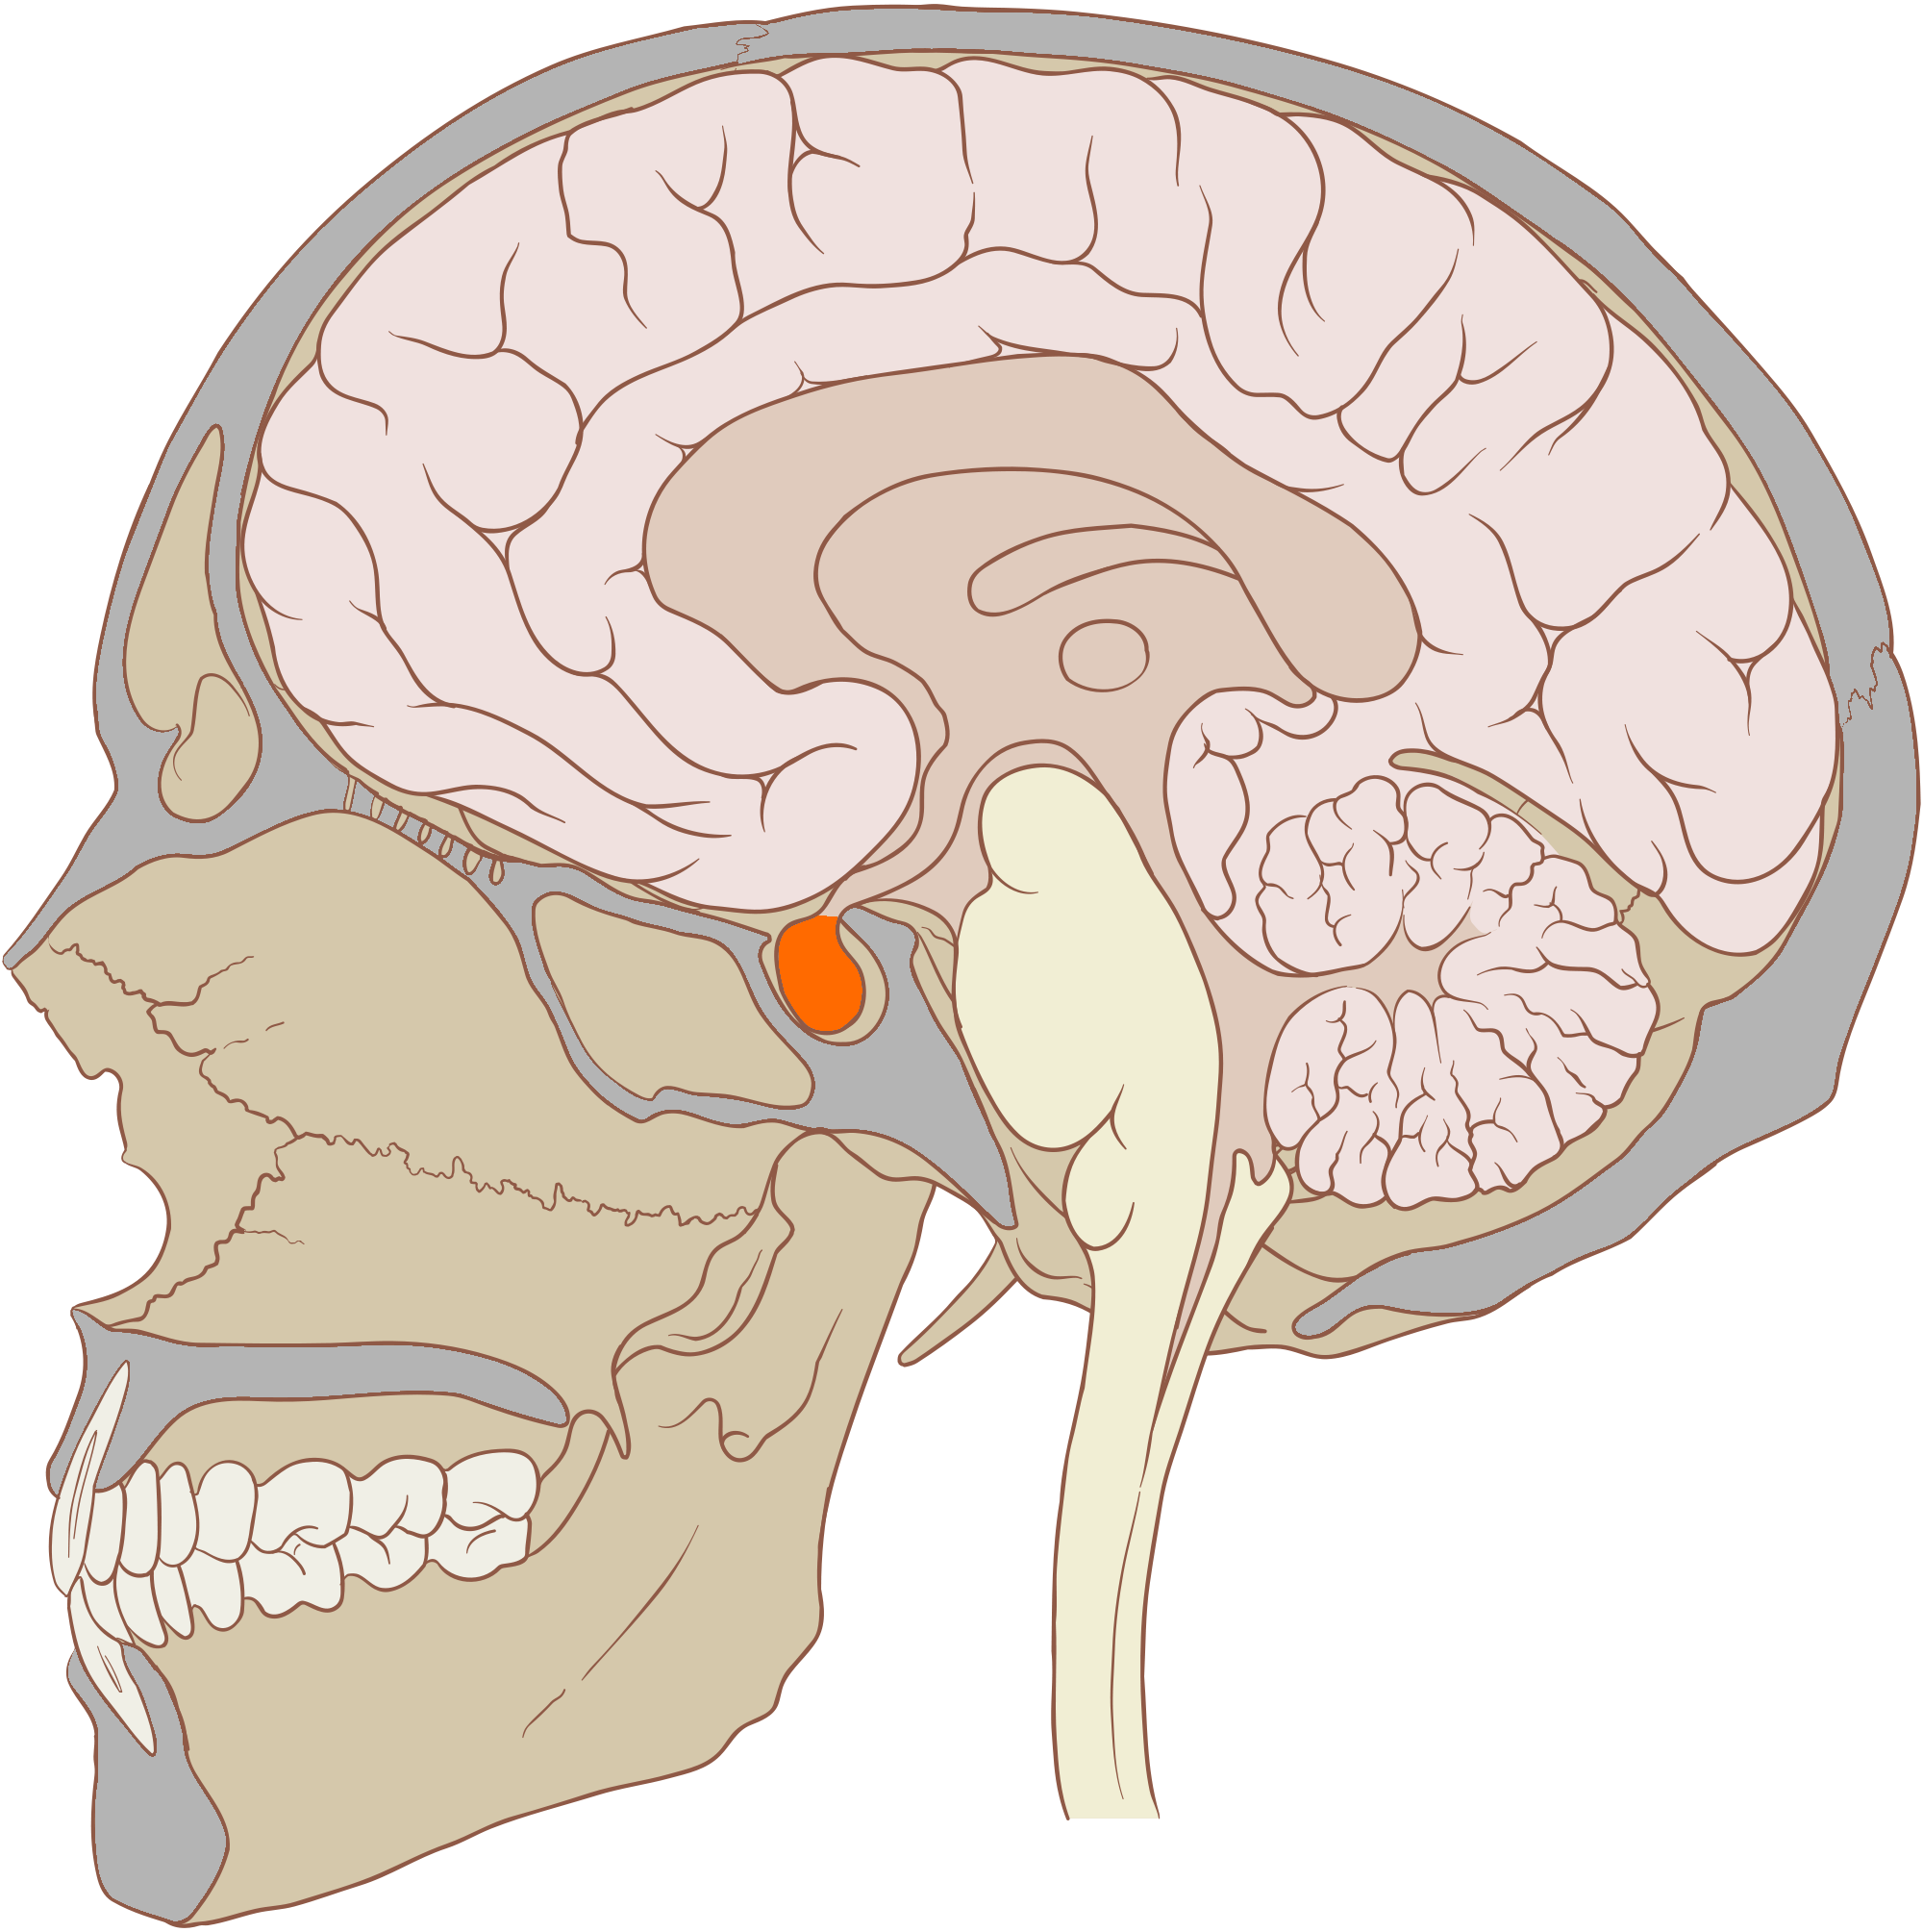 Hypofysen under främre delen av hjärnan